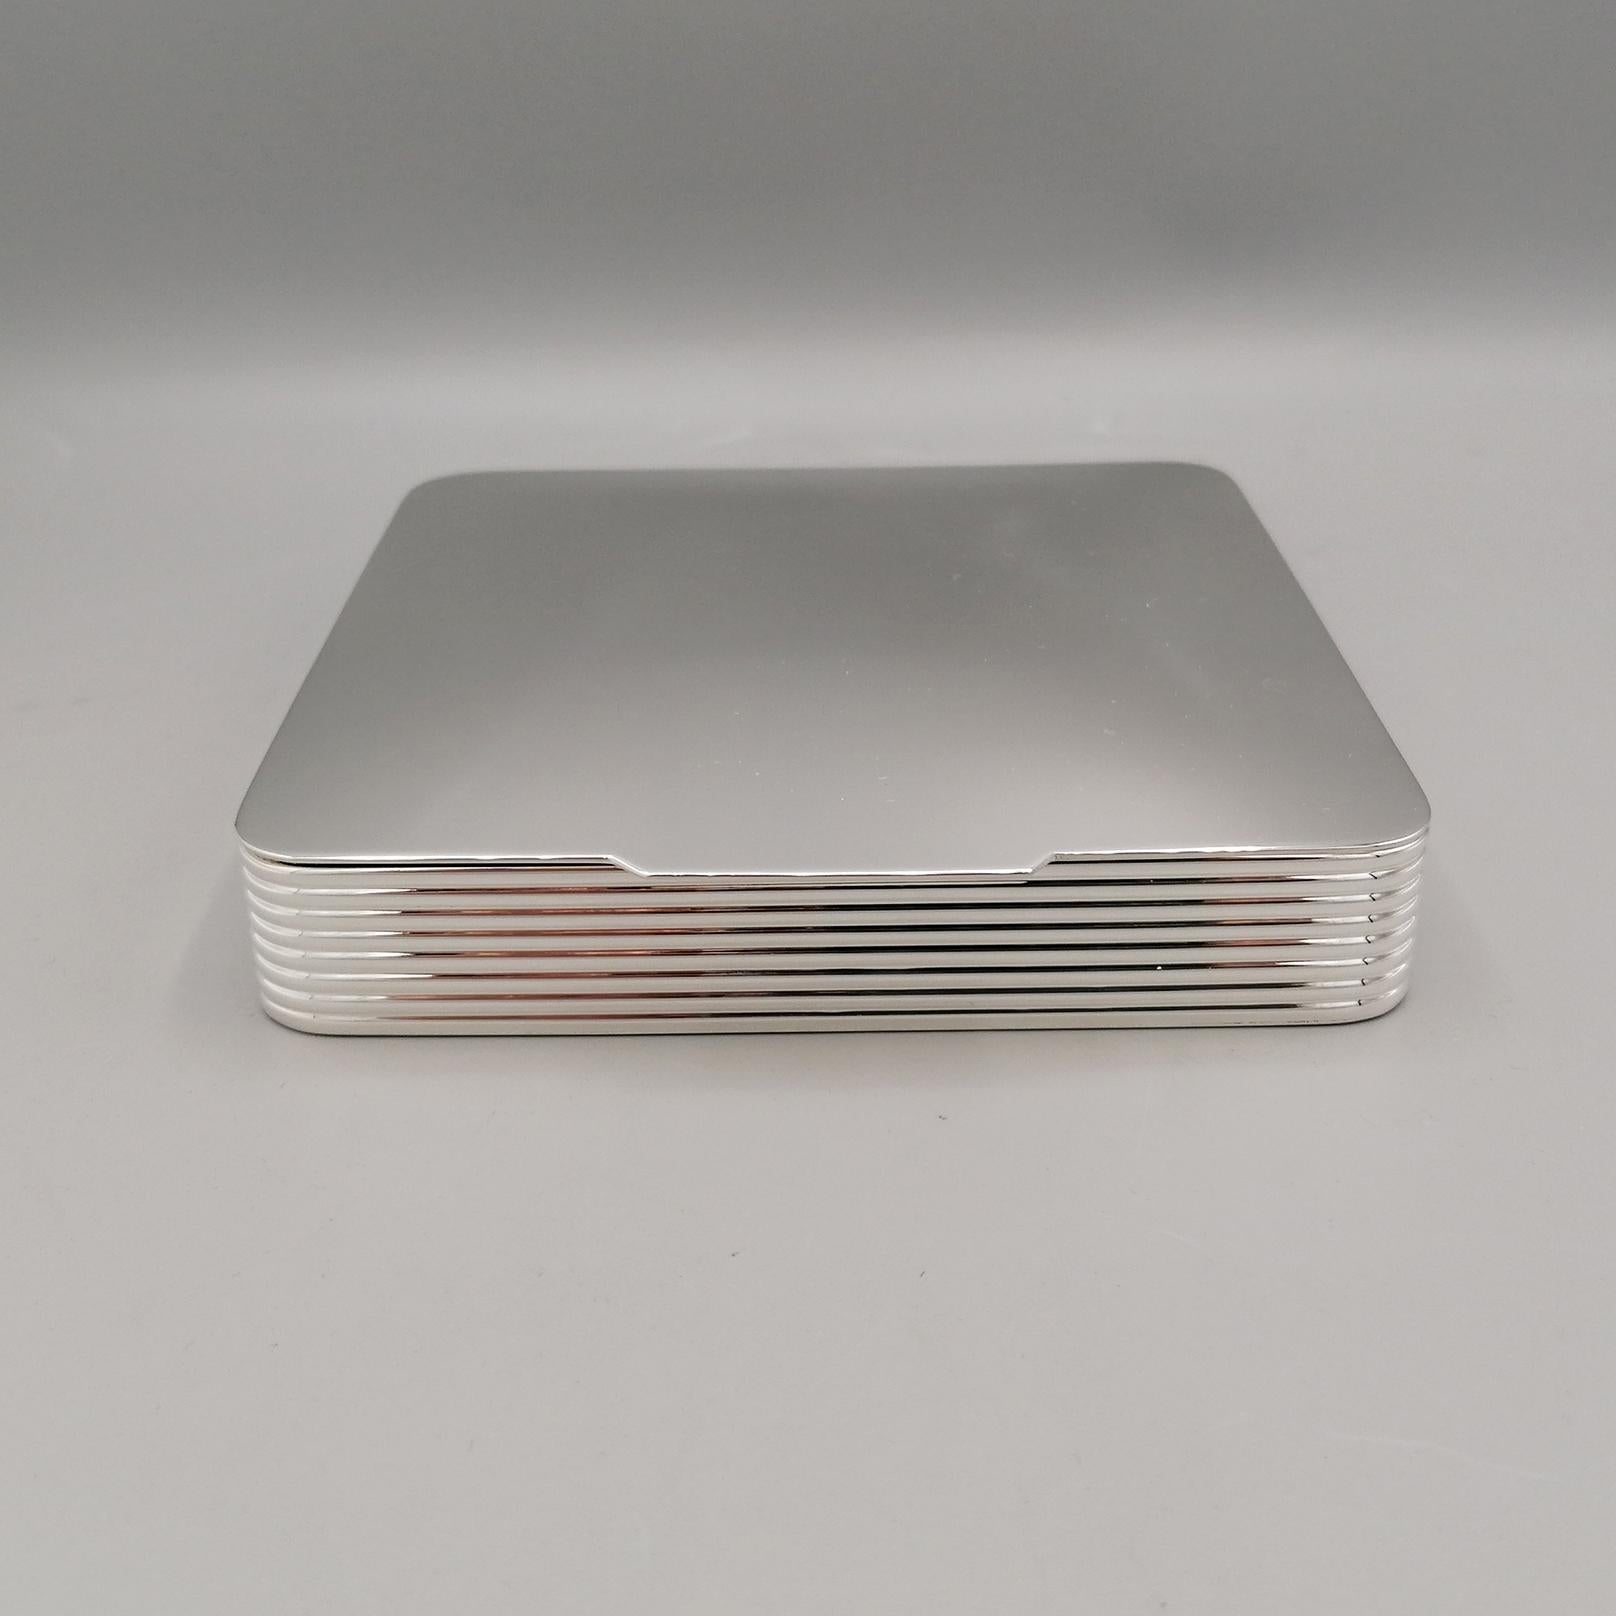 XXI Jahrhundert Italienisch Sterling Silber Moderne Tabelle Box
Moderne Tischdose aus 925er Sterlingsilber.
Die Schachtel hat eine quadratische Form und der Rand des Korpus ist ausgekleidet.
Der Deckel ist aufklappbar und wurde ebenso wie das Innere